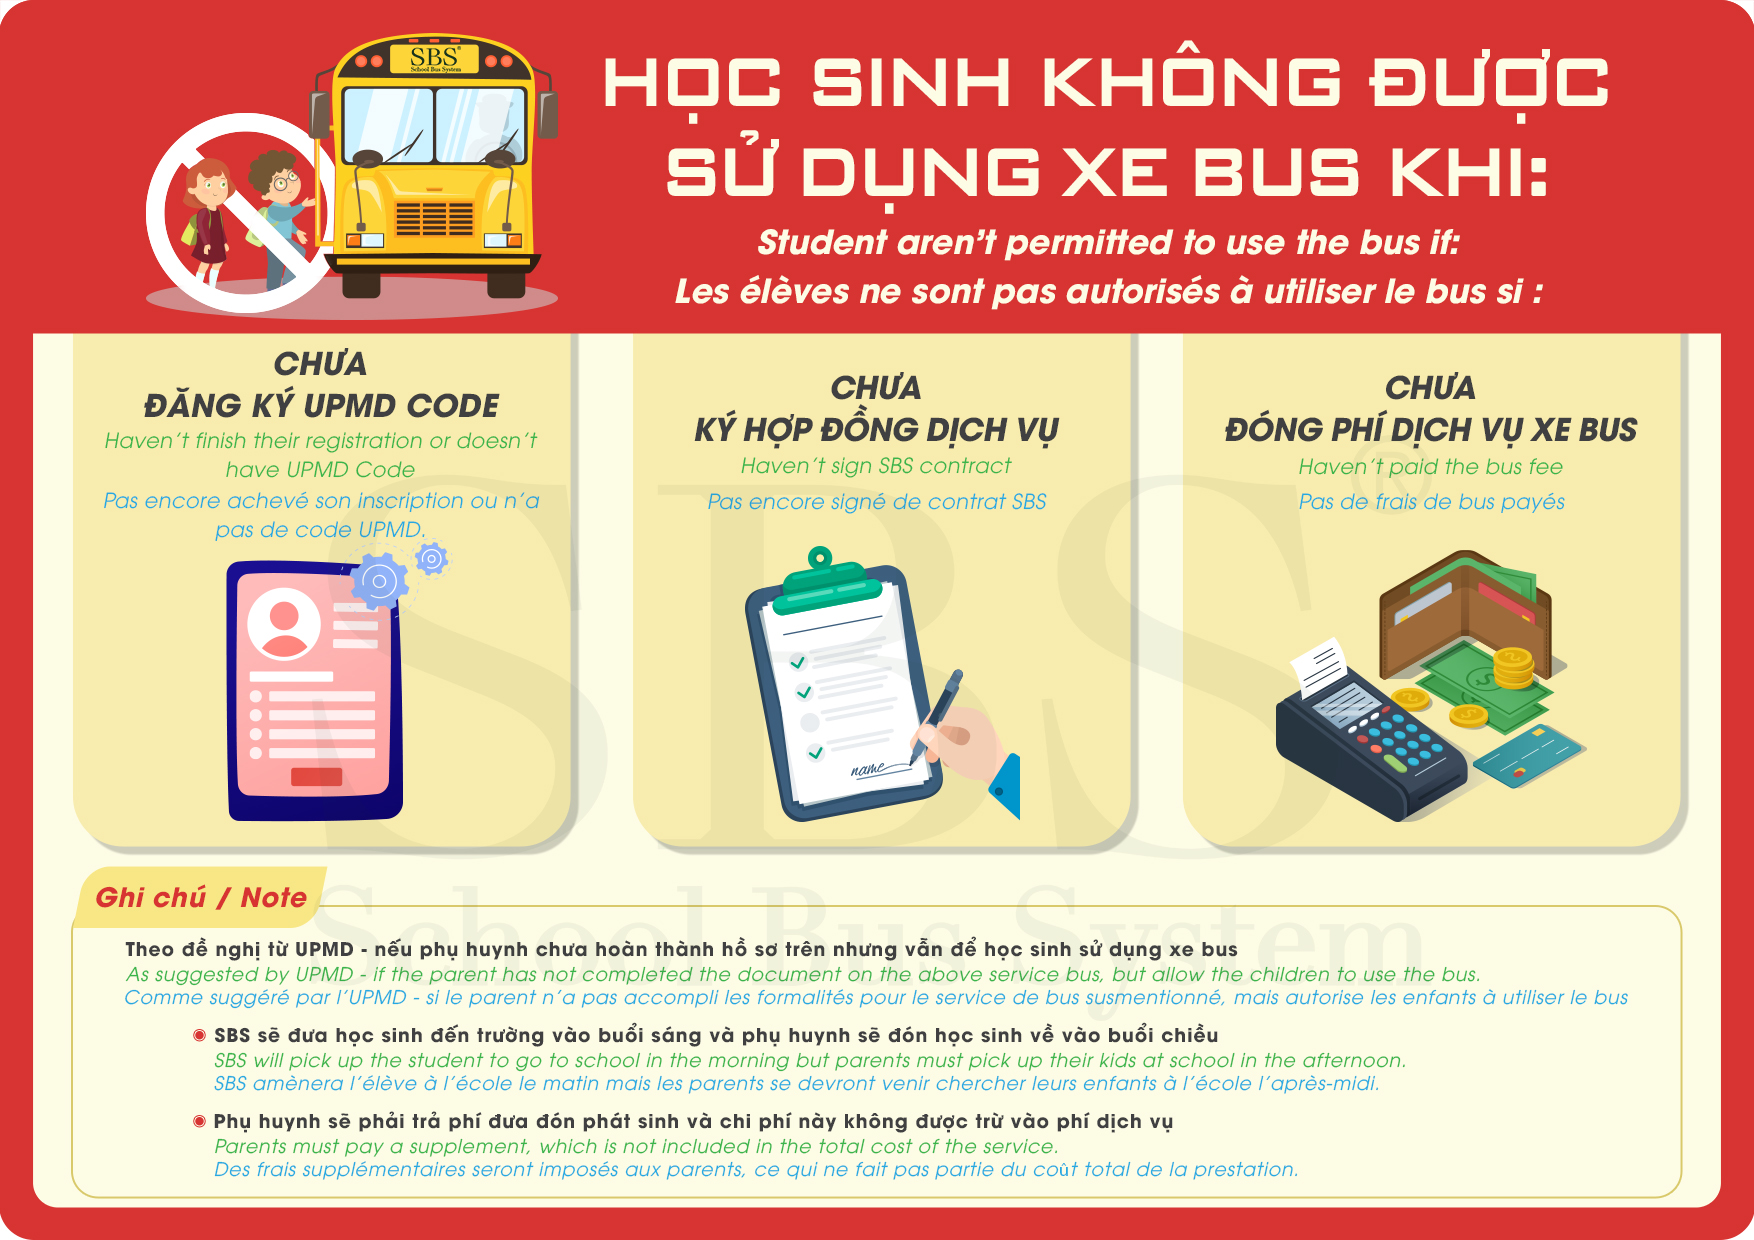 Student aren’t permitted to use the bus if / Les élèves ne sont pas autorisés à utiliser le bus si :